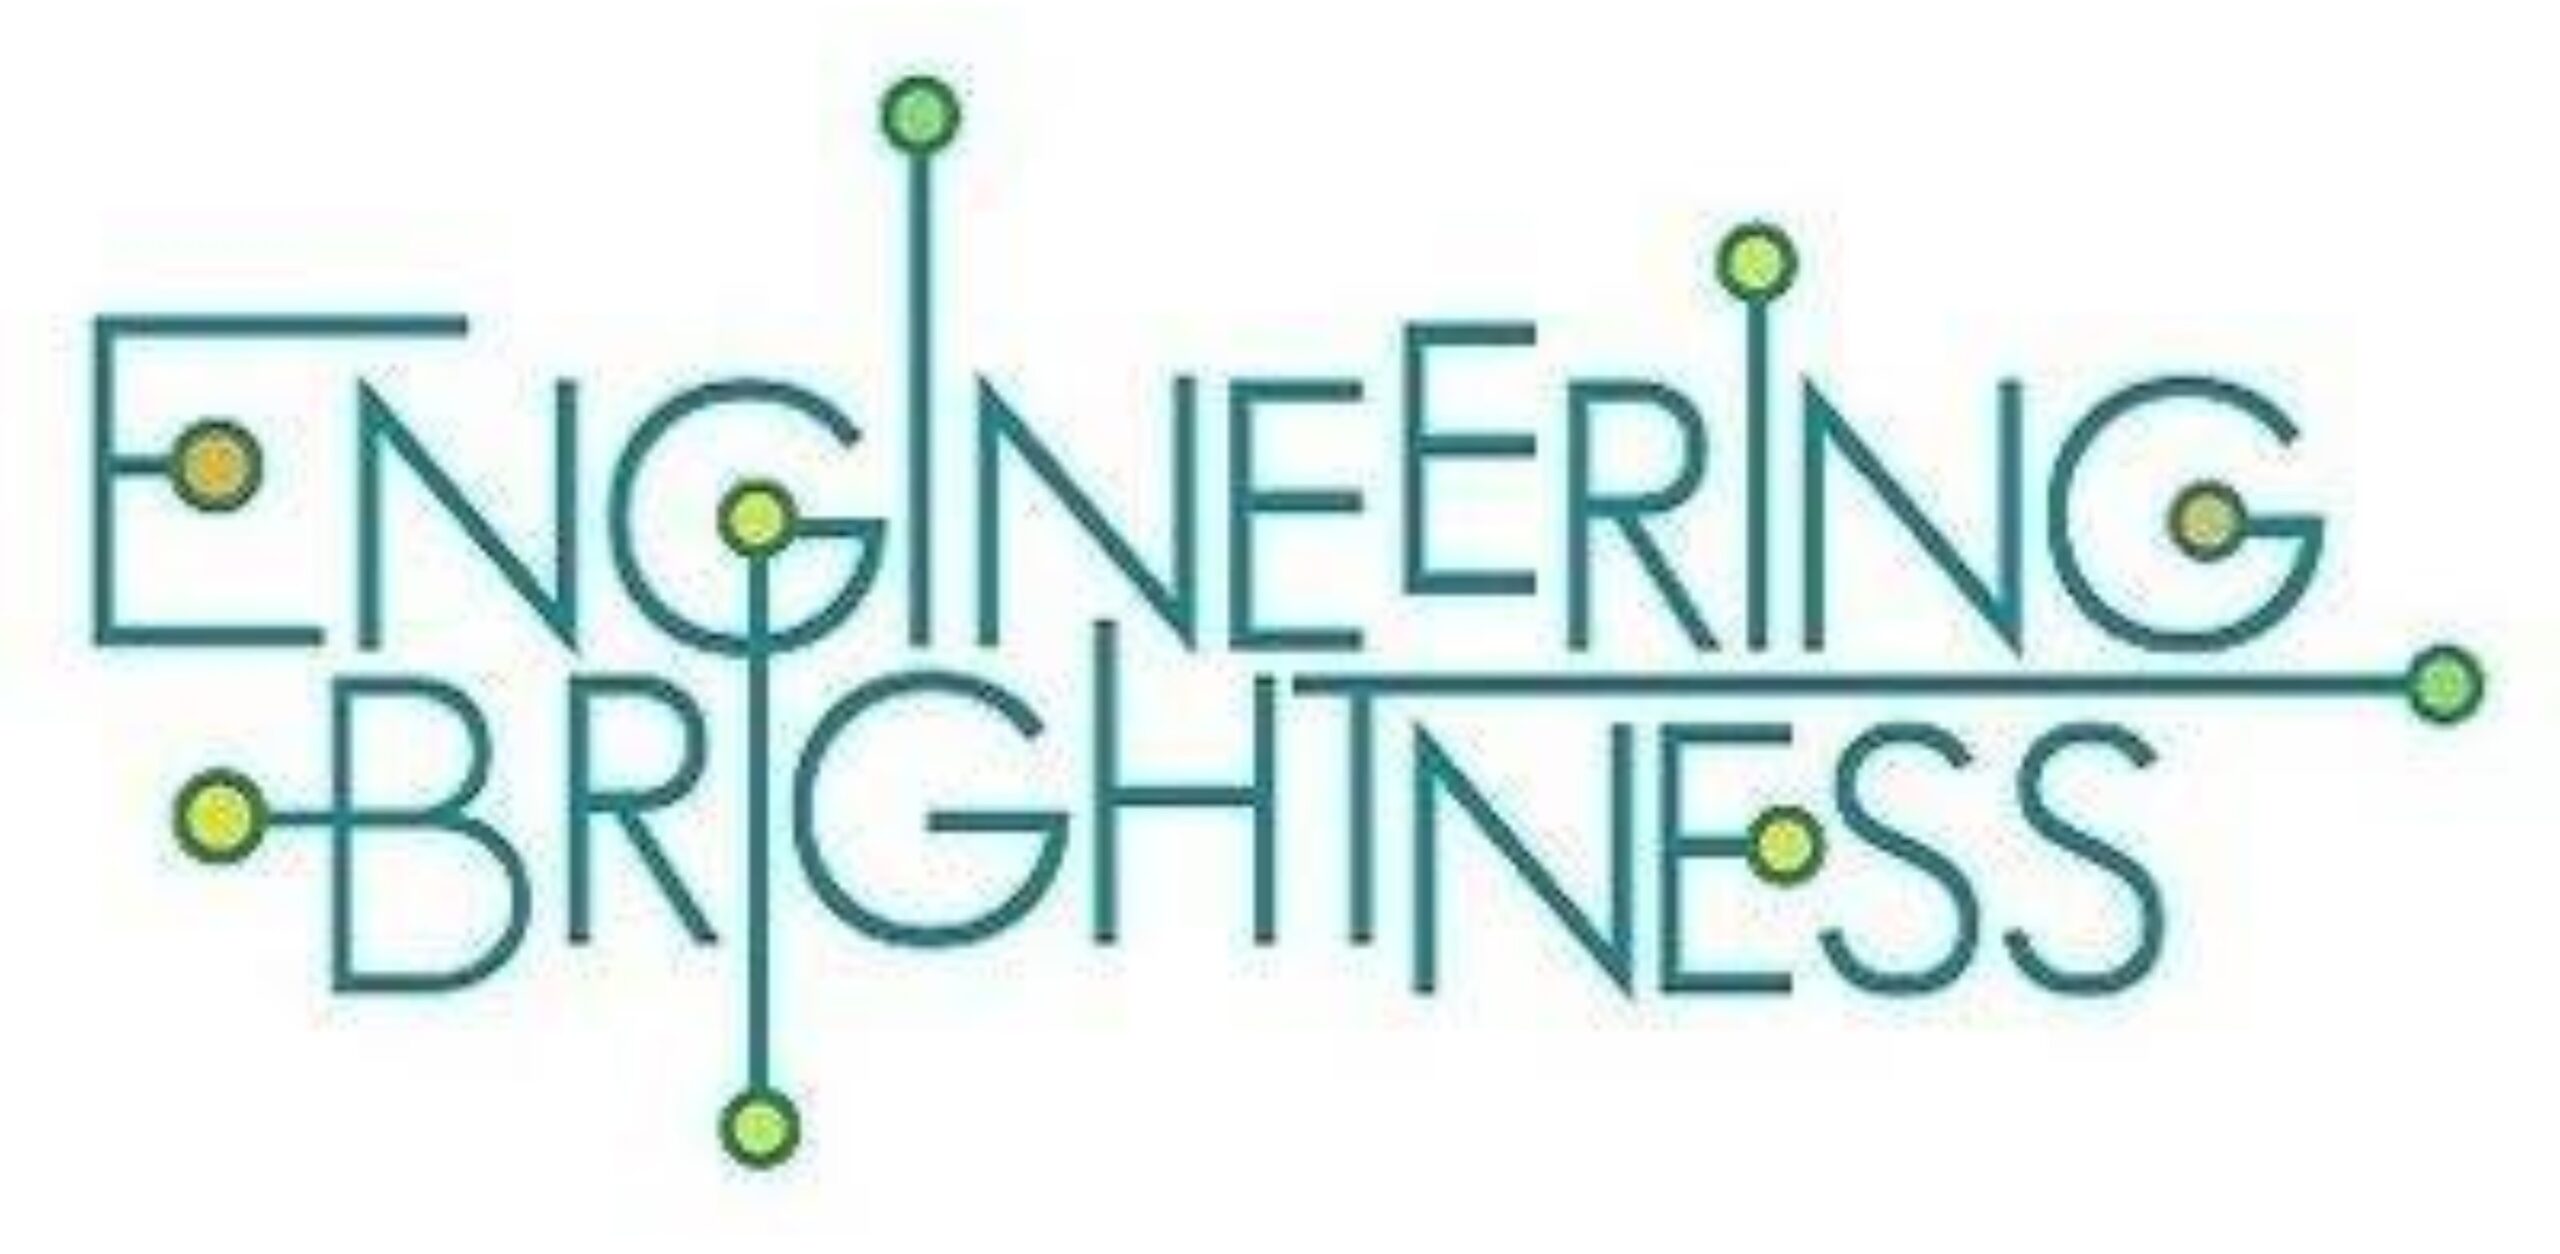 Engineering Brightness